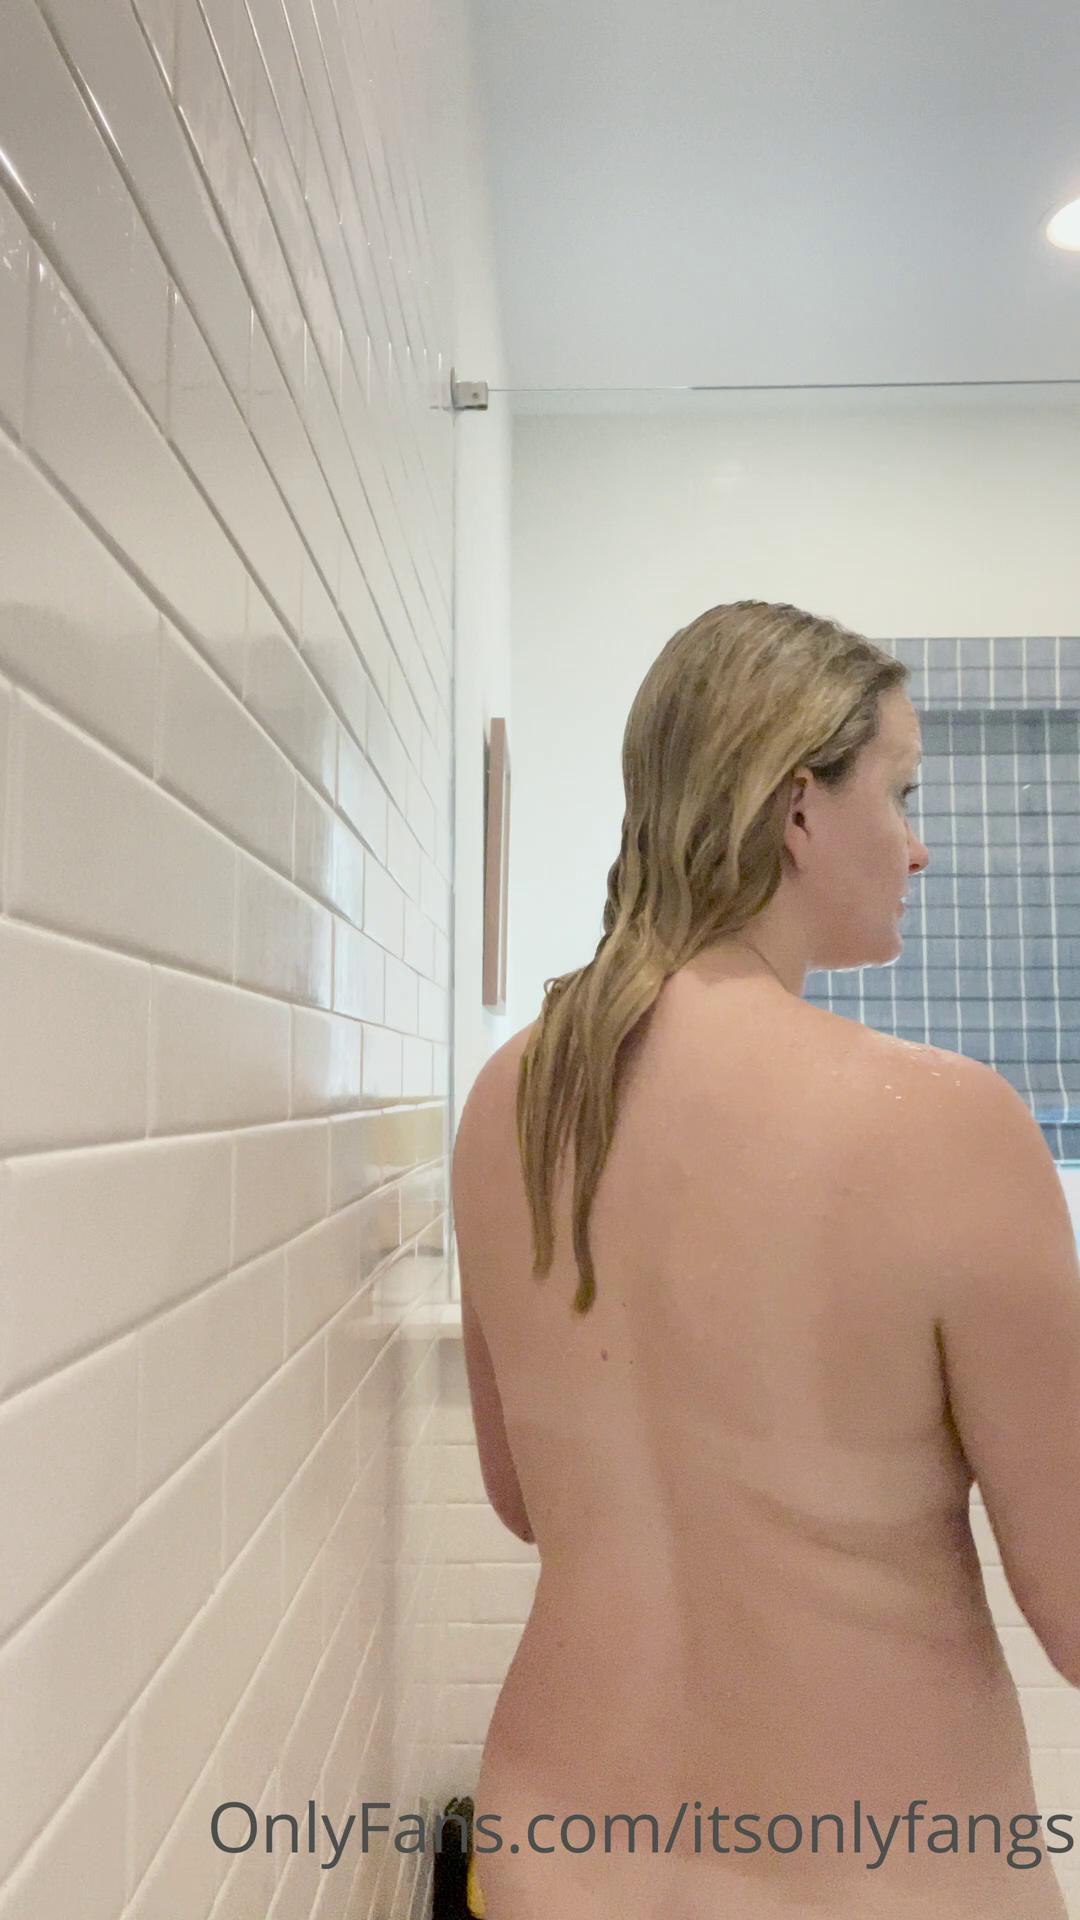 fangs nude shower onlyfans video leaked KPMNCE